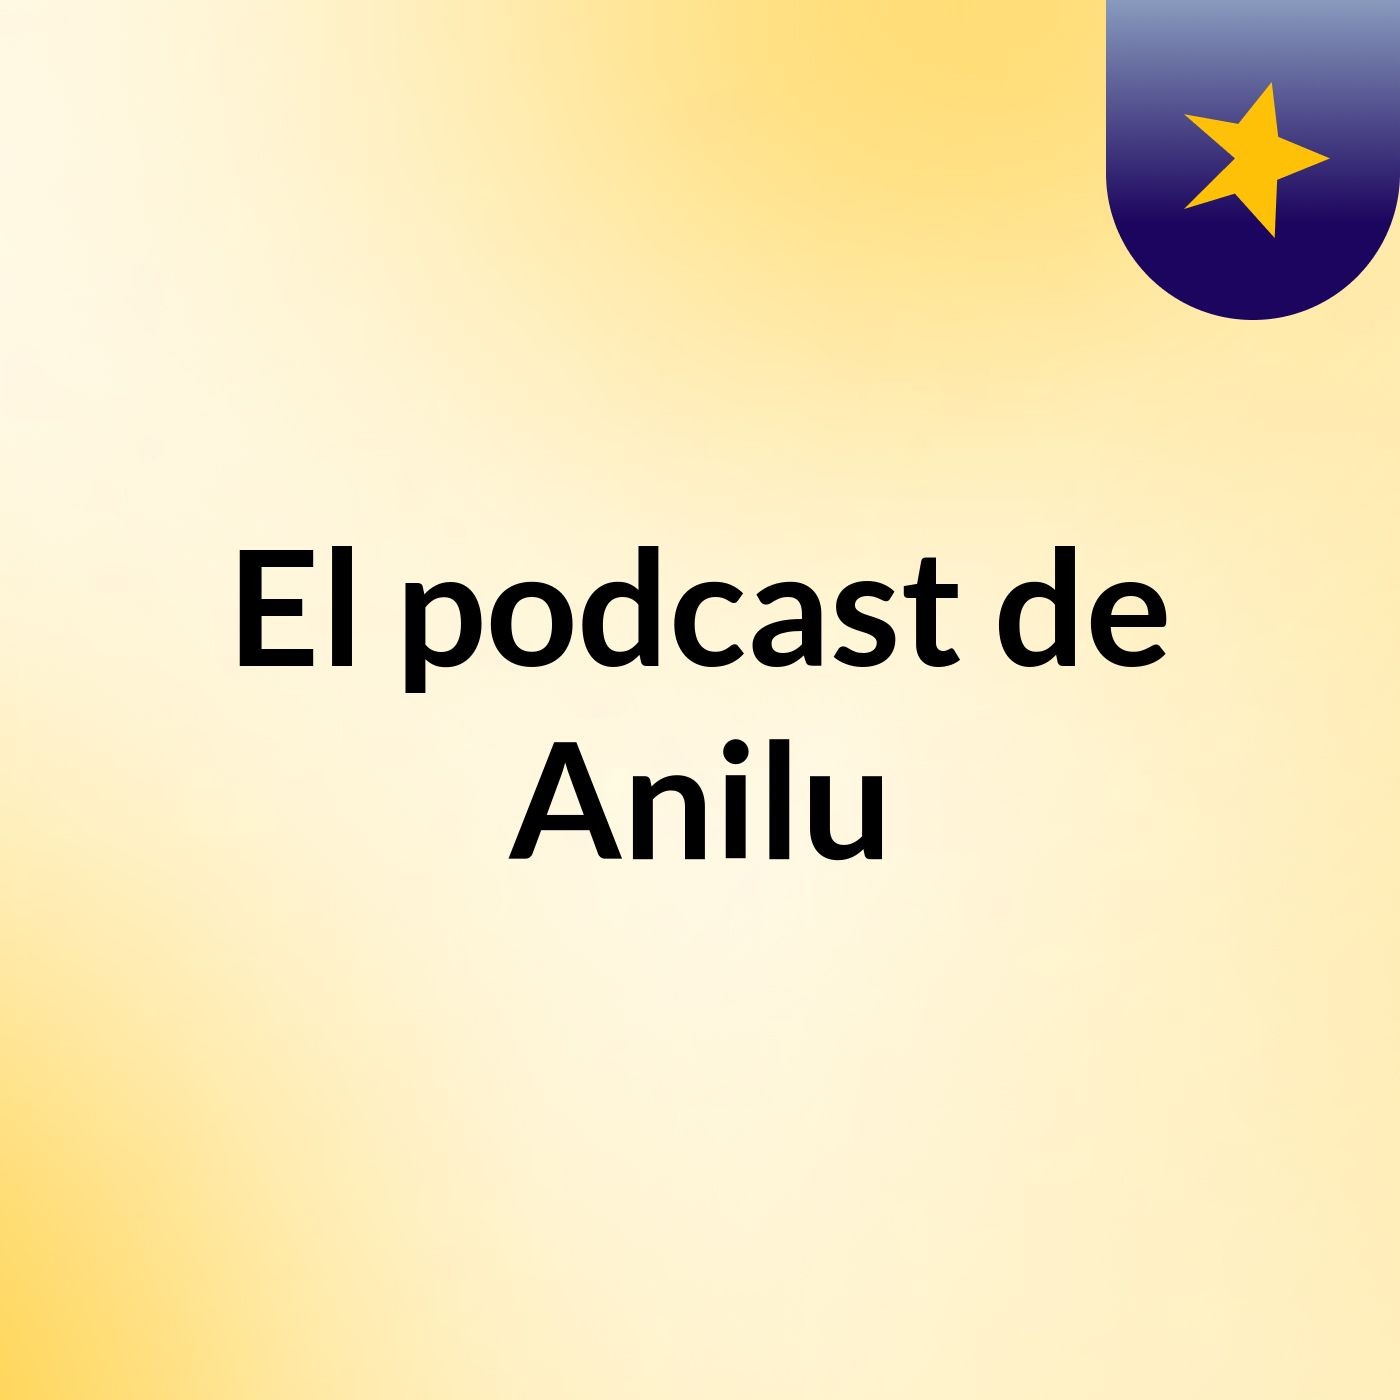 El podcast de Anilu